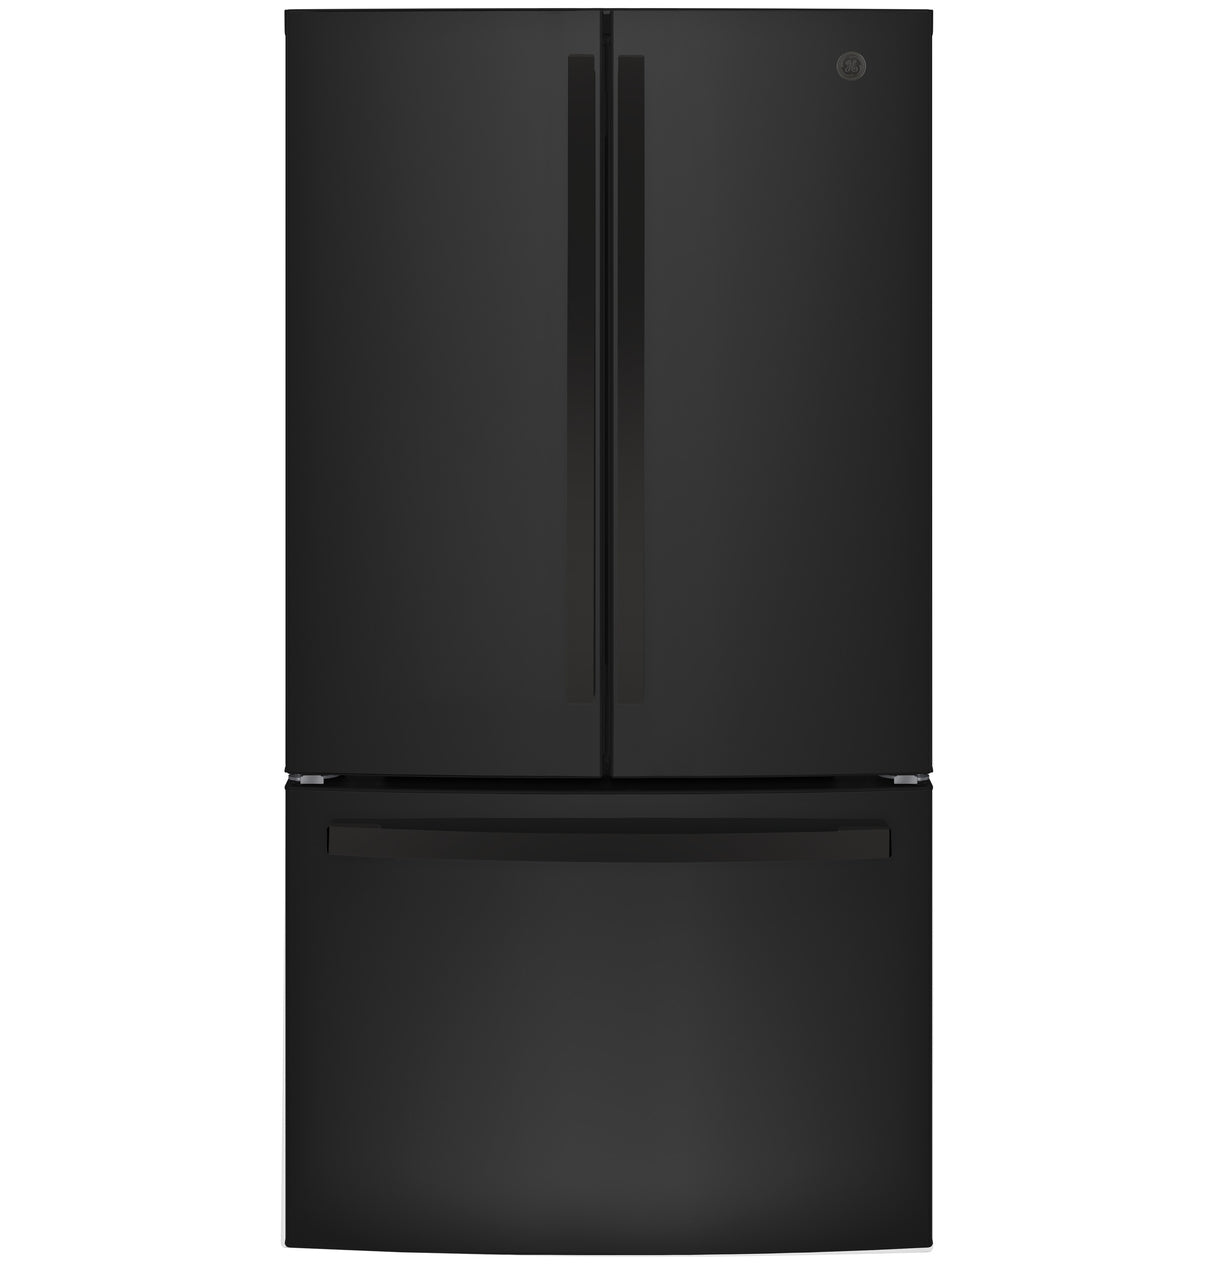 GE(R) ENERGY STAR(R) 27.0 Cu. Ft. French-Door Refrigerator - (GNE27JGMBB)